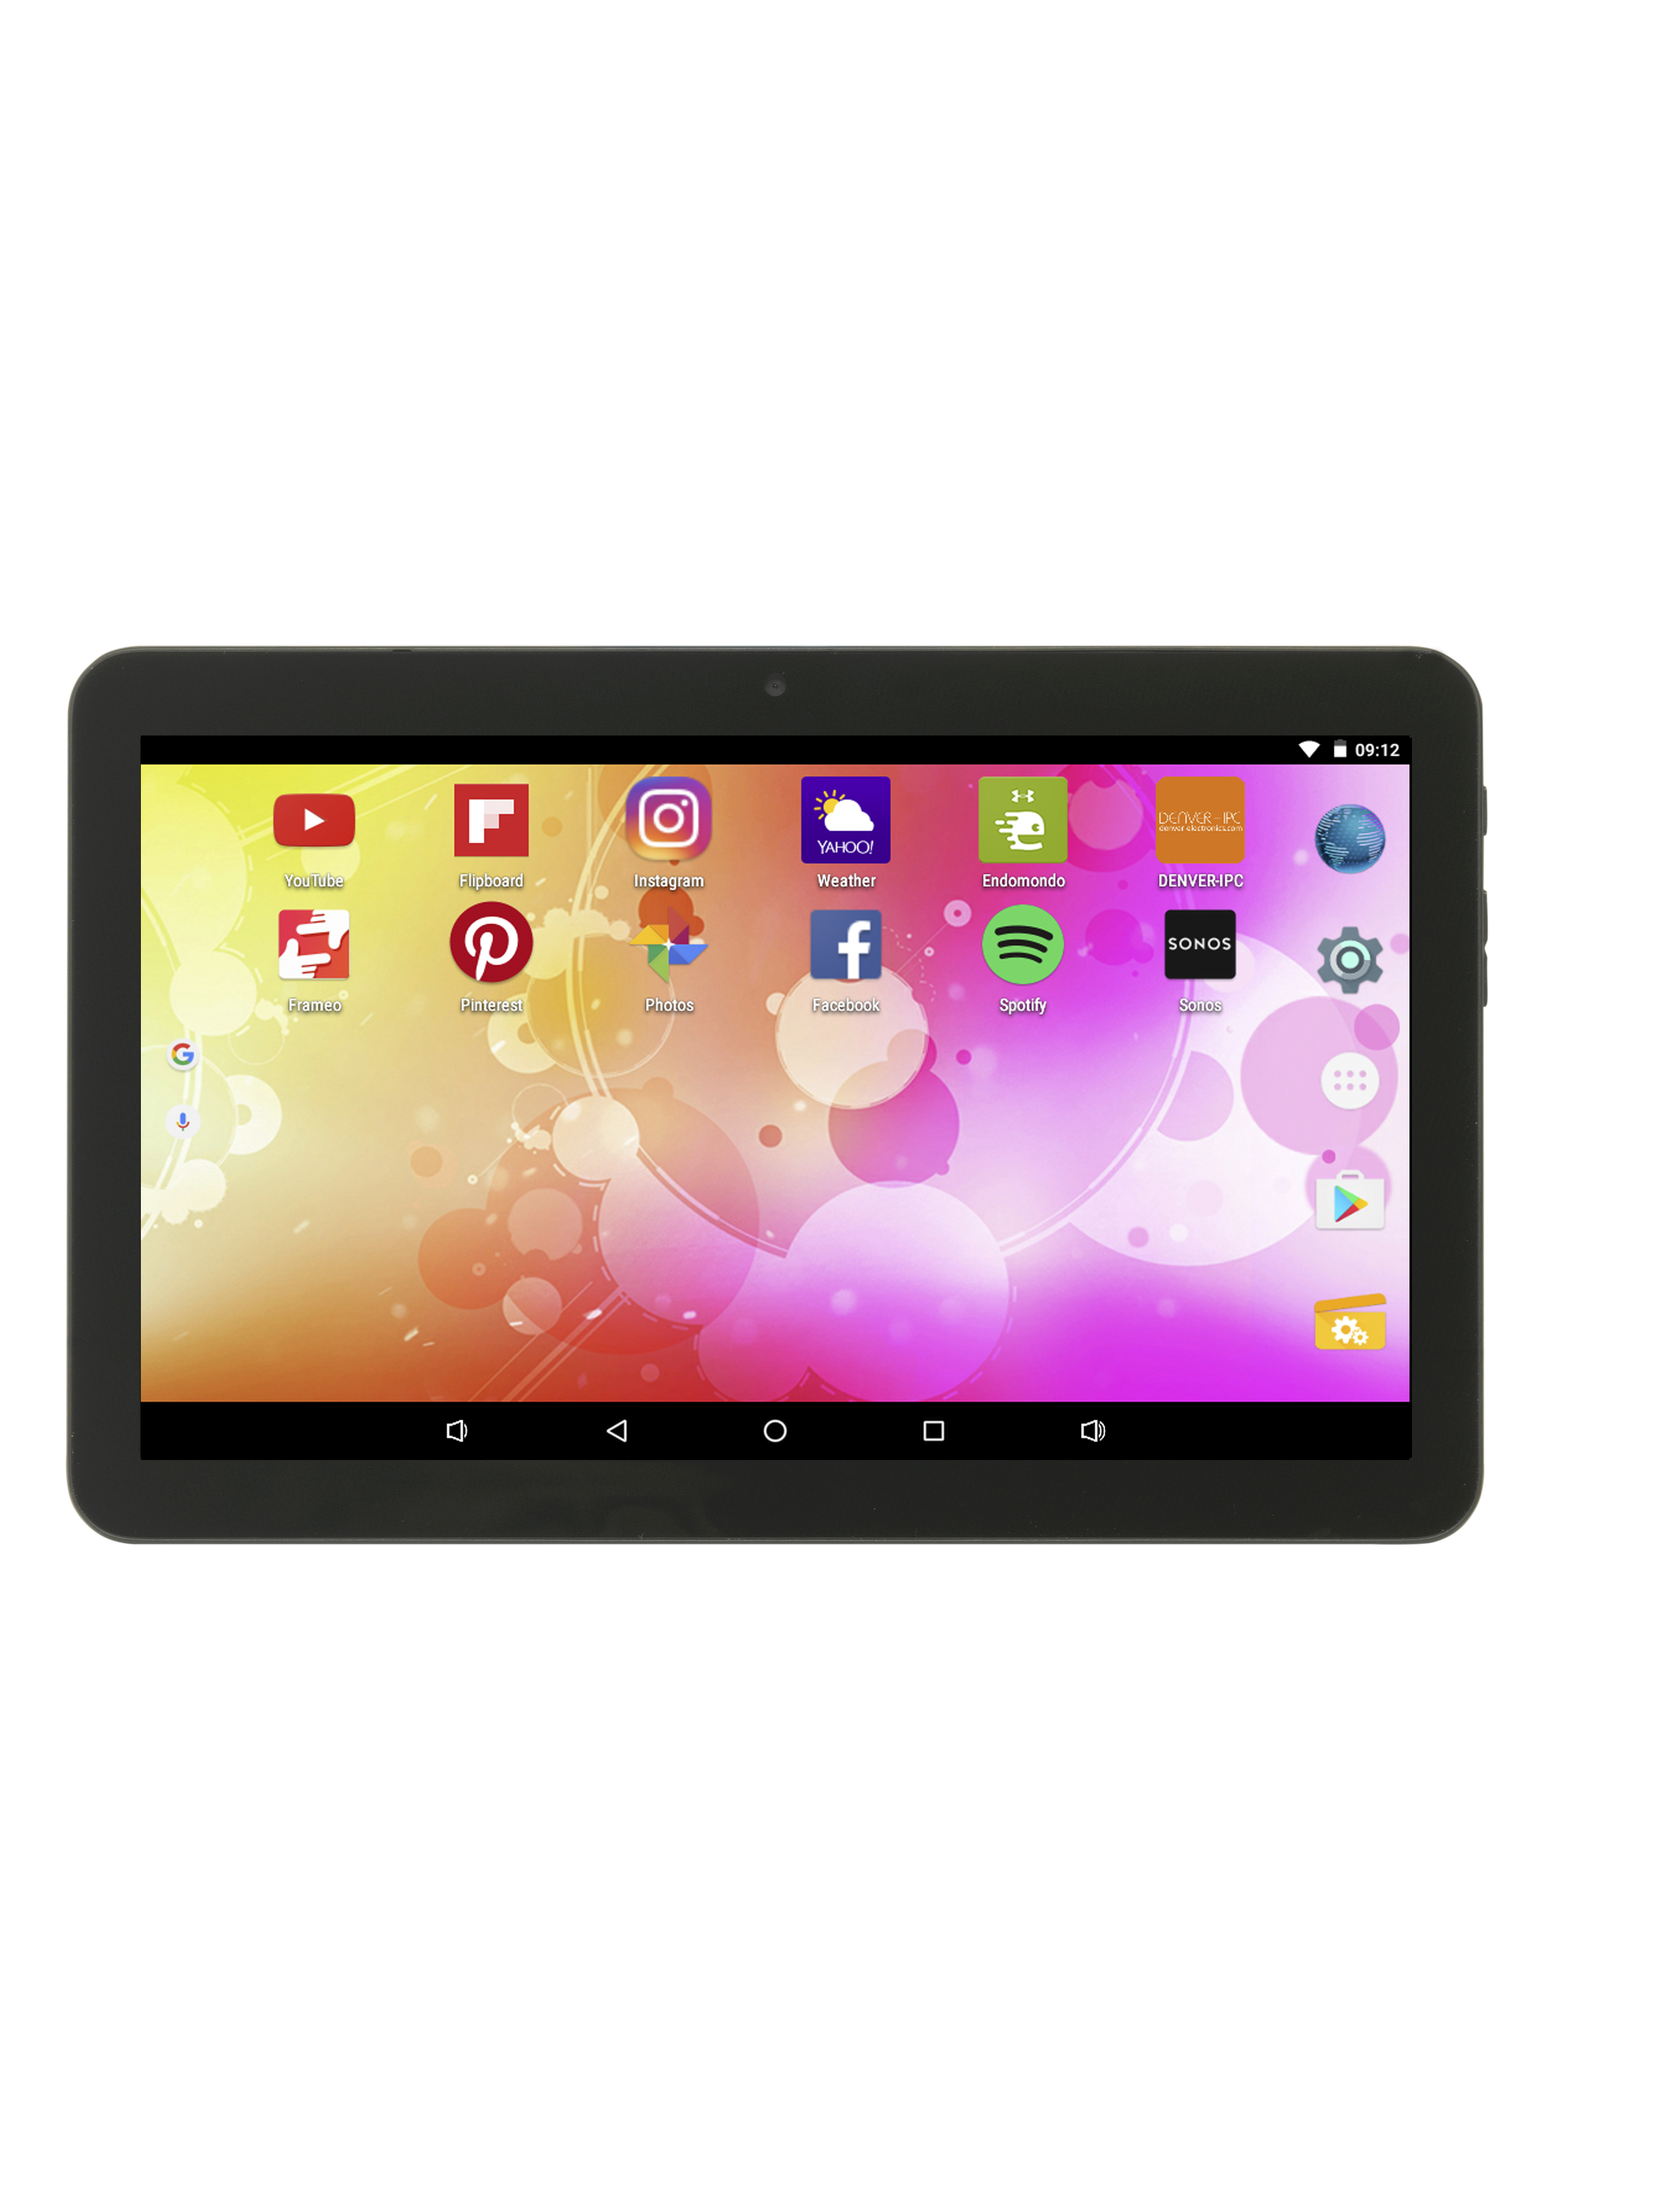 Tablet denver 10.1pulgadas taq - 10423l - 16gb rom - 1 gb ram - 4g - wifi - bluetooth - android 8.1